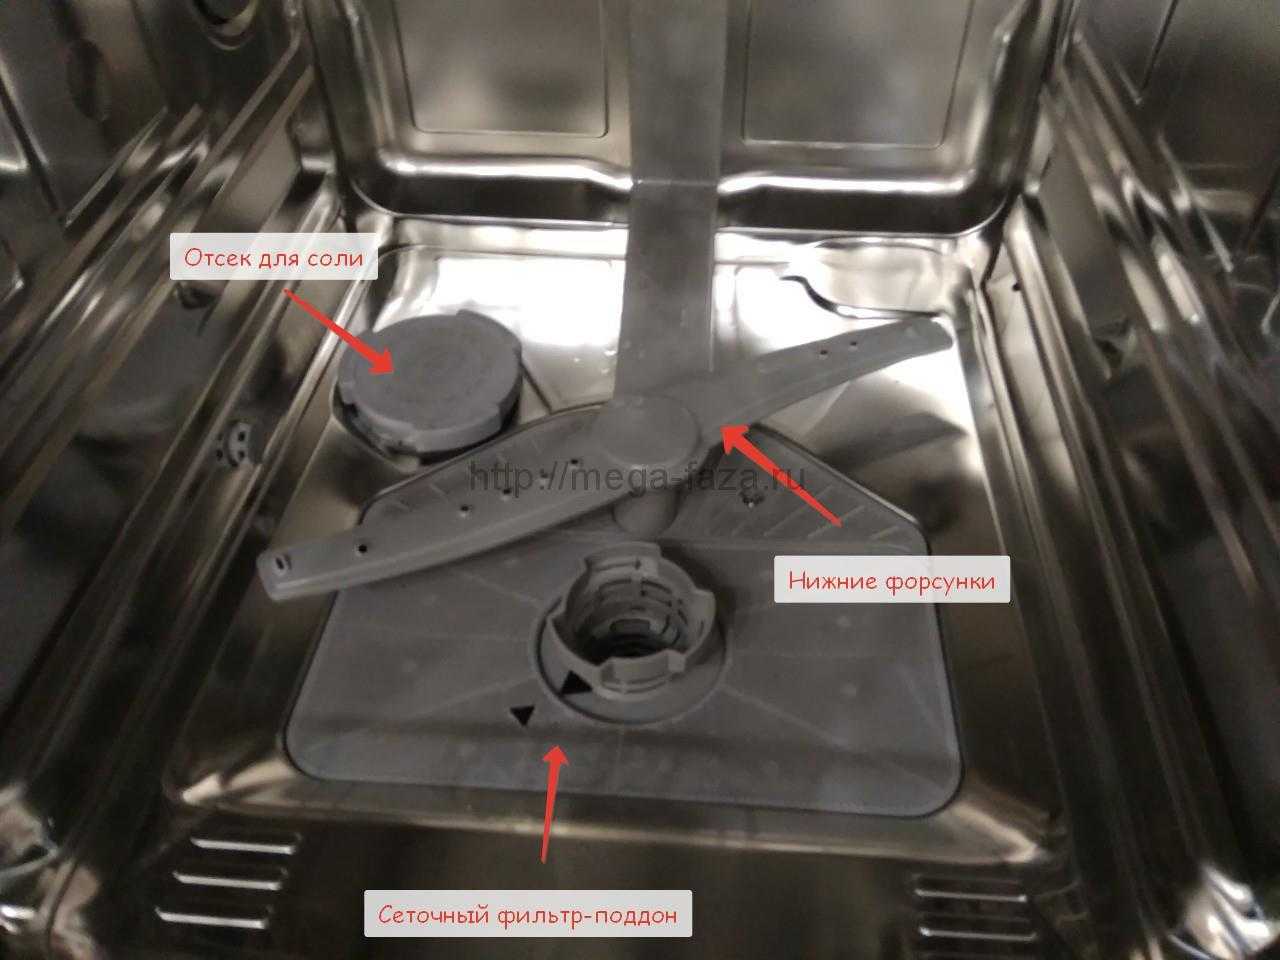 Посудомоечная машина не моет посуду причины. Bosch посудомойка отсек для соли в посудомоечной. Посудомойка Bosch отсек для соли. Отсек для соли в посудомоечной машине Abat. Не растворяется таблетка в посудомоечной машине.